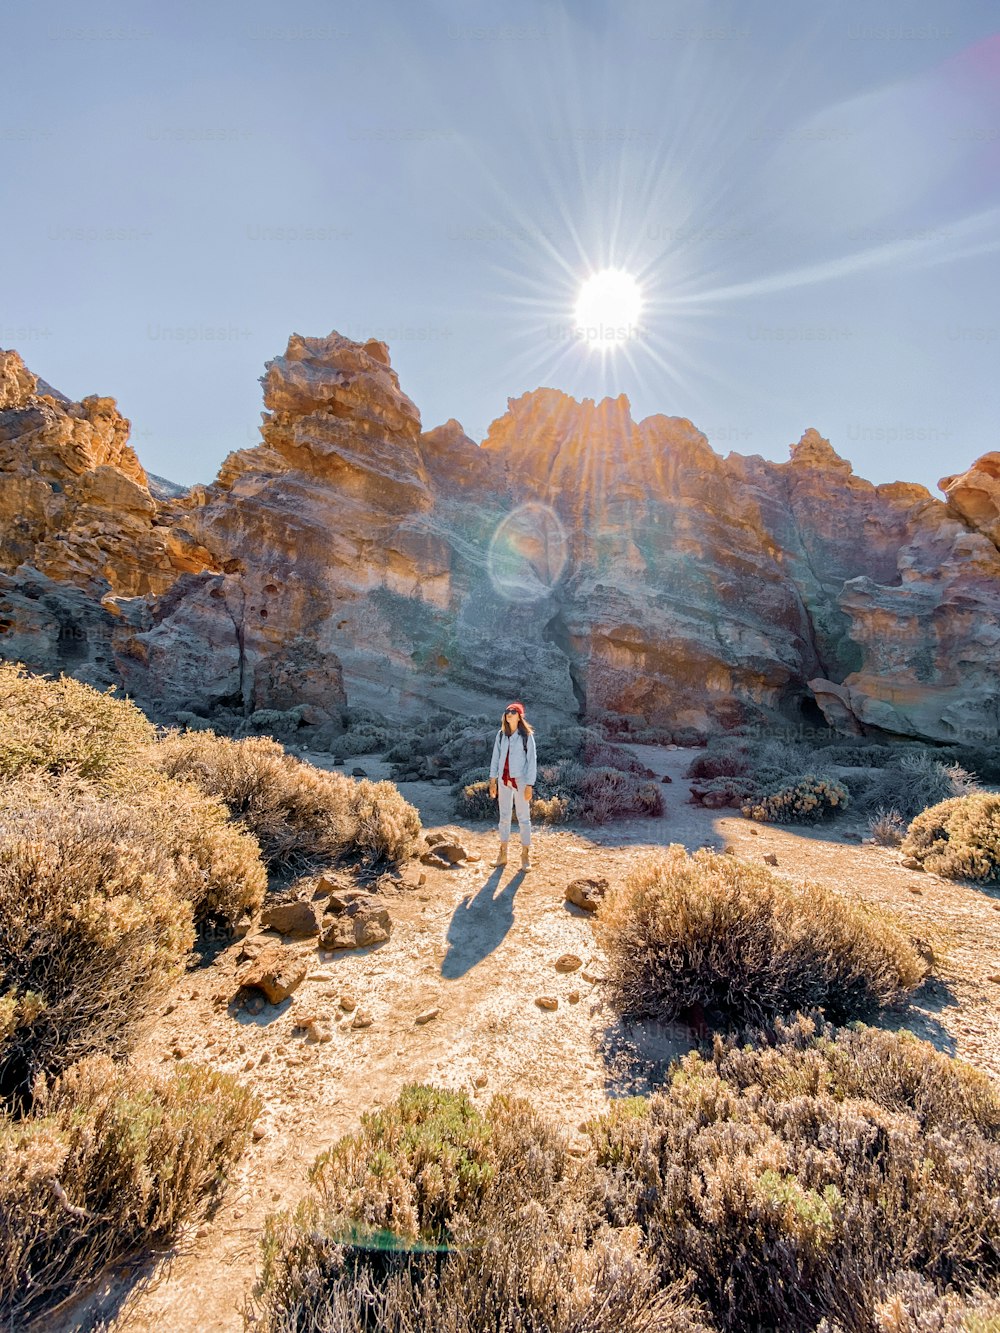 Paisagem de uma bela rocha no vale do deserto com a mulher viajando. Imagem feita no telemóvel